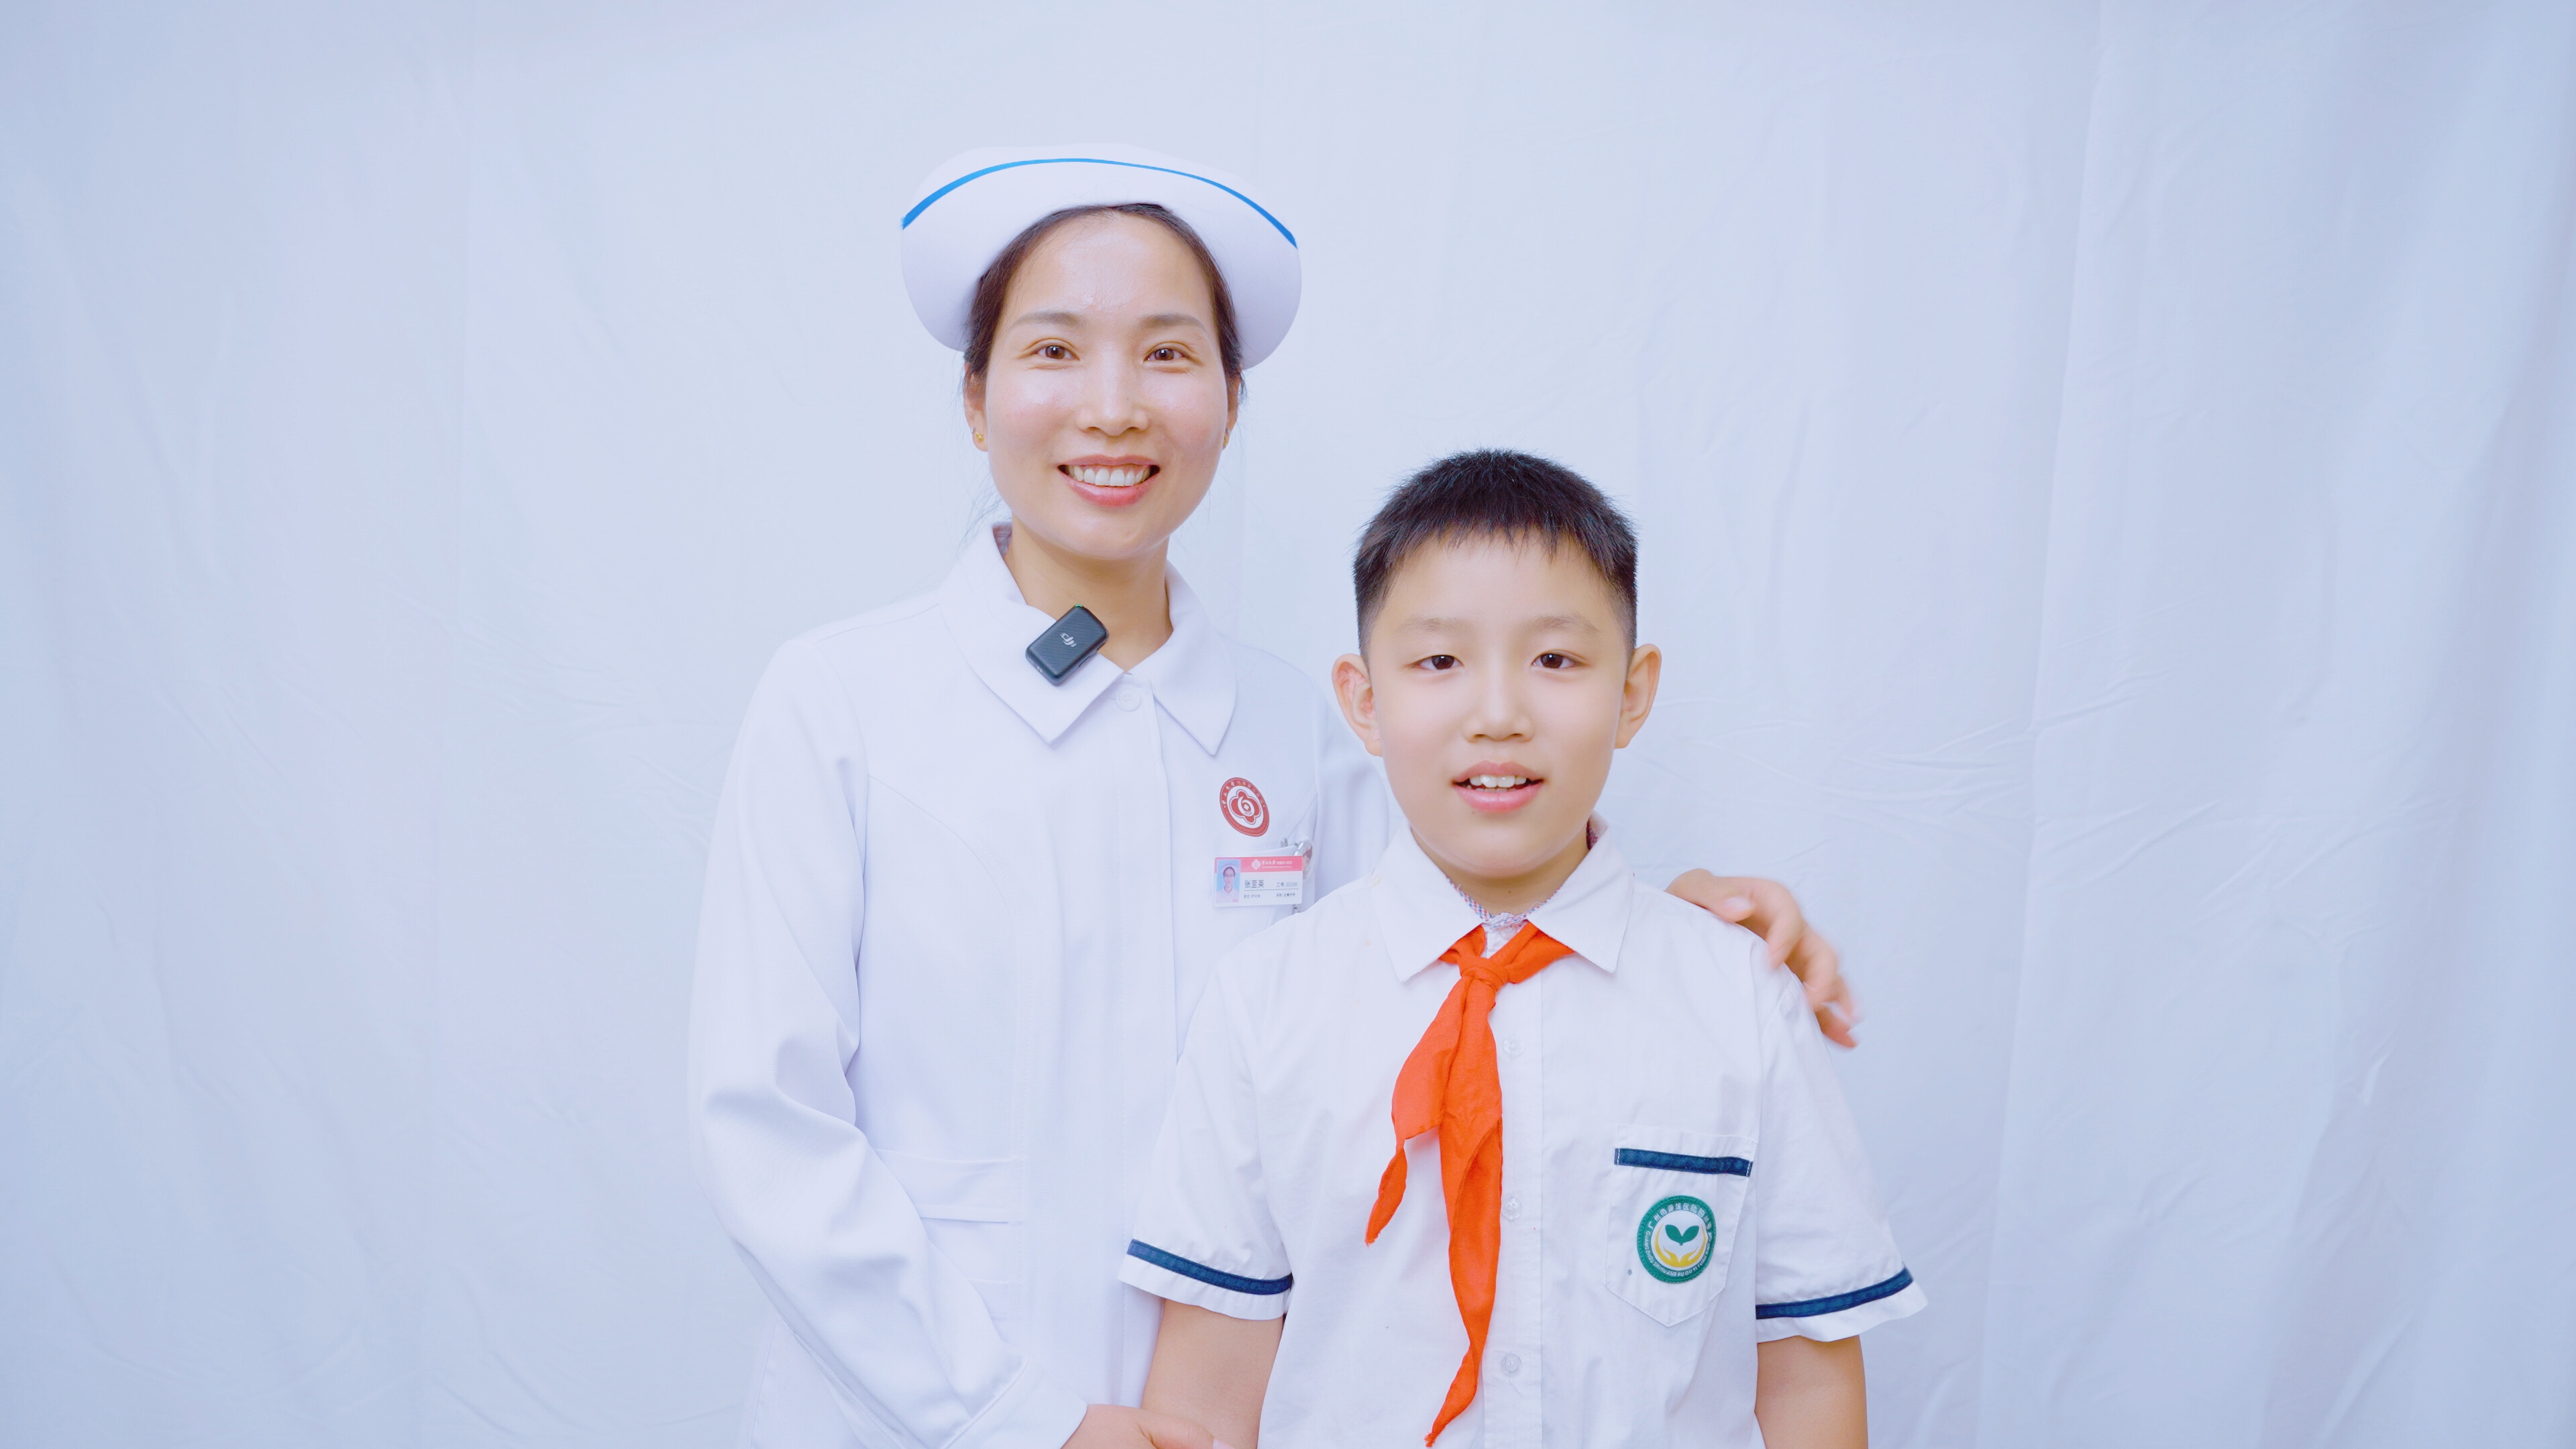 中山大学附属第六医院神经科、中医科护士长 张至英和儿子王鸿锦。